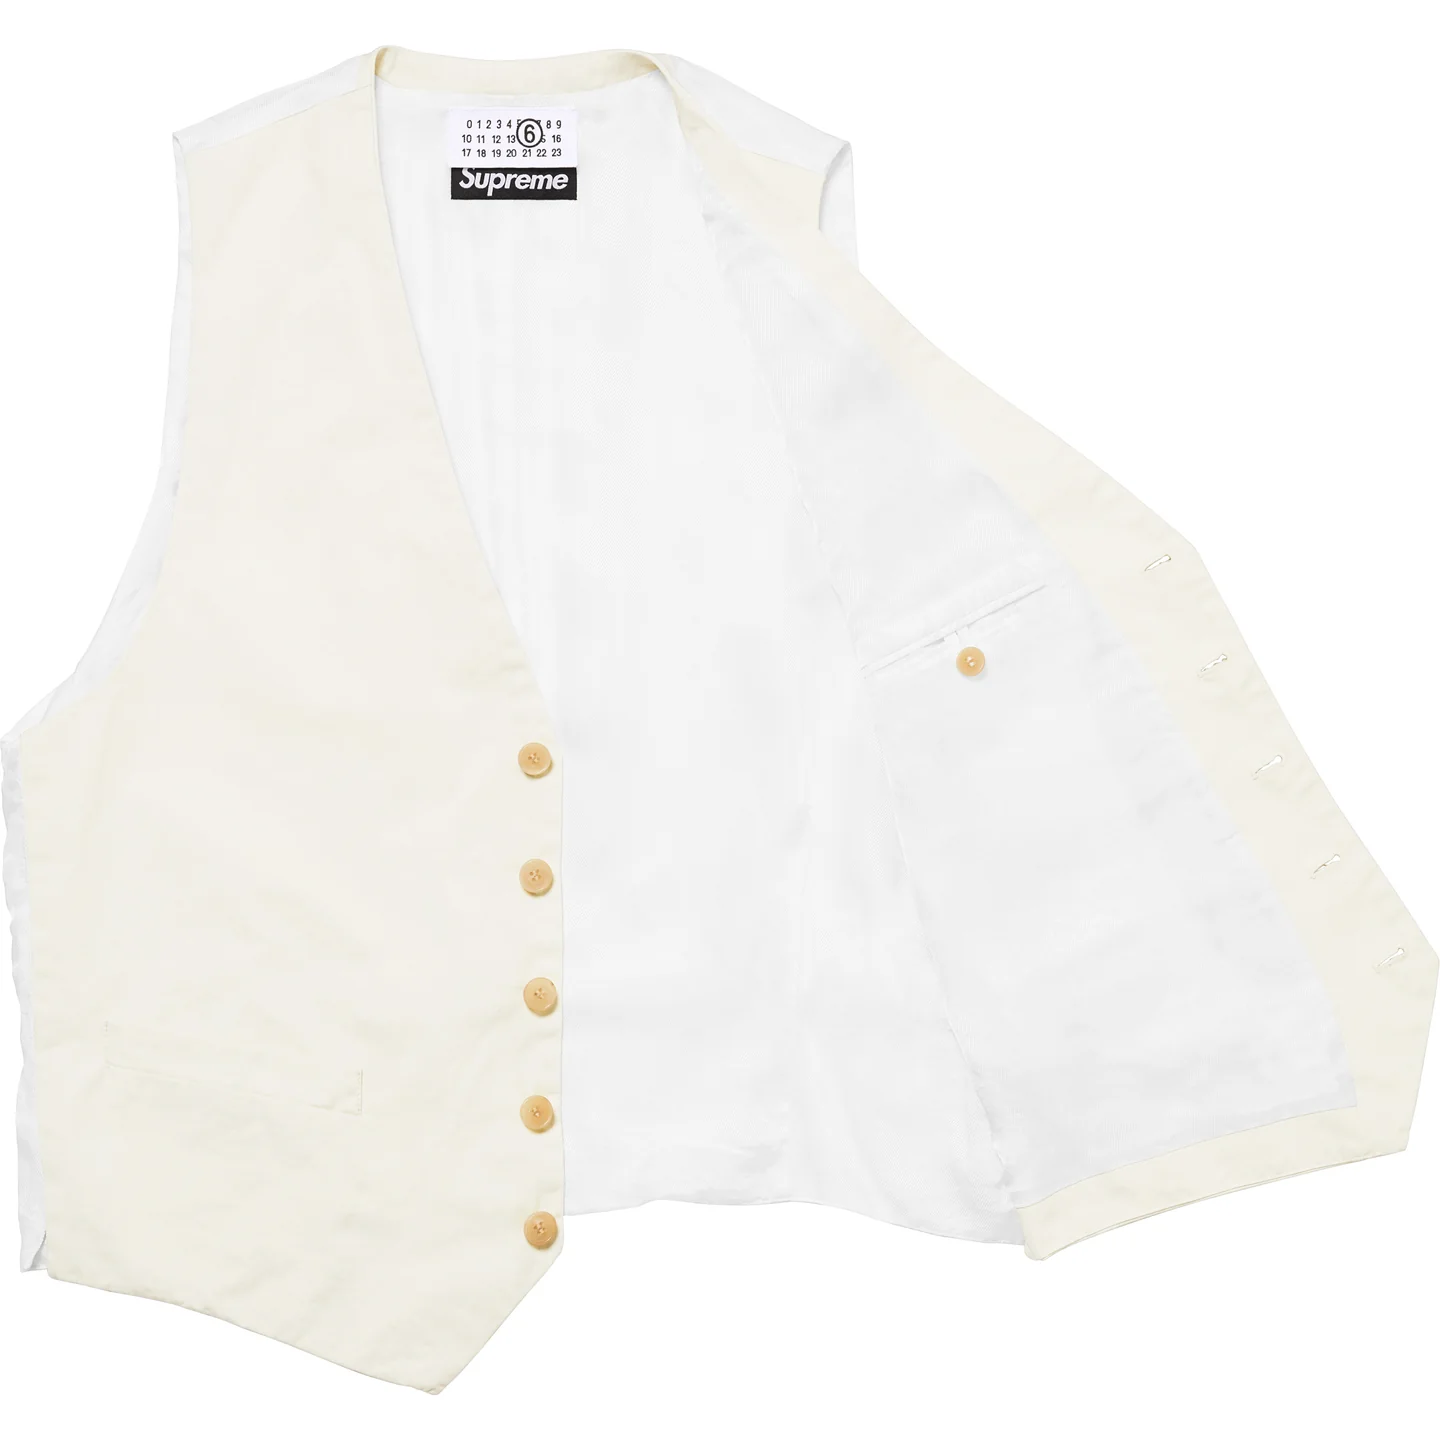 Supreme®/MM6 Maison Margiela Washed Cotton Suit Vest | Supreme 24ss